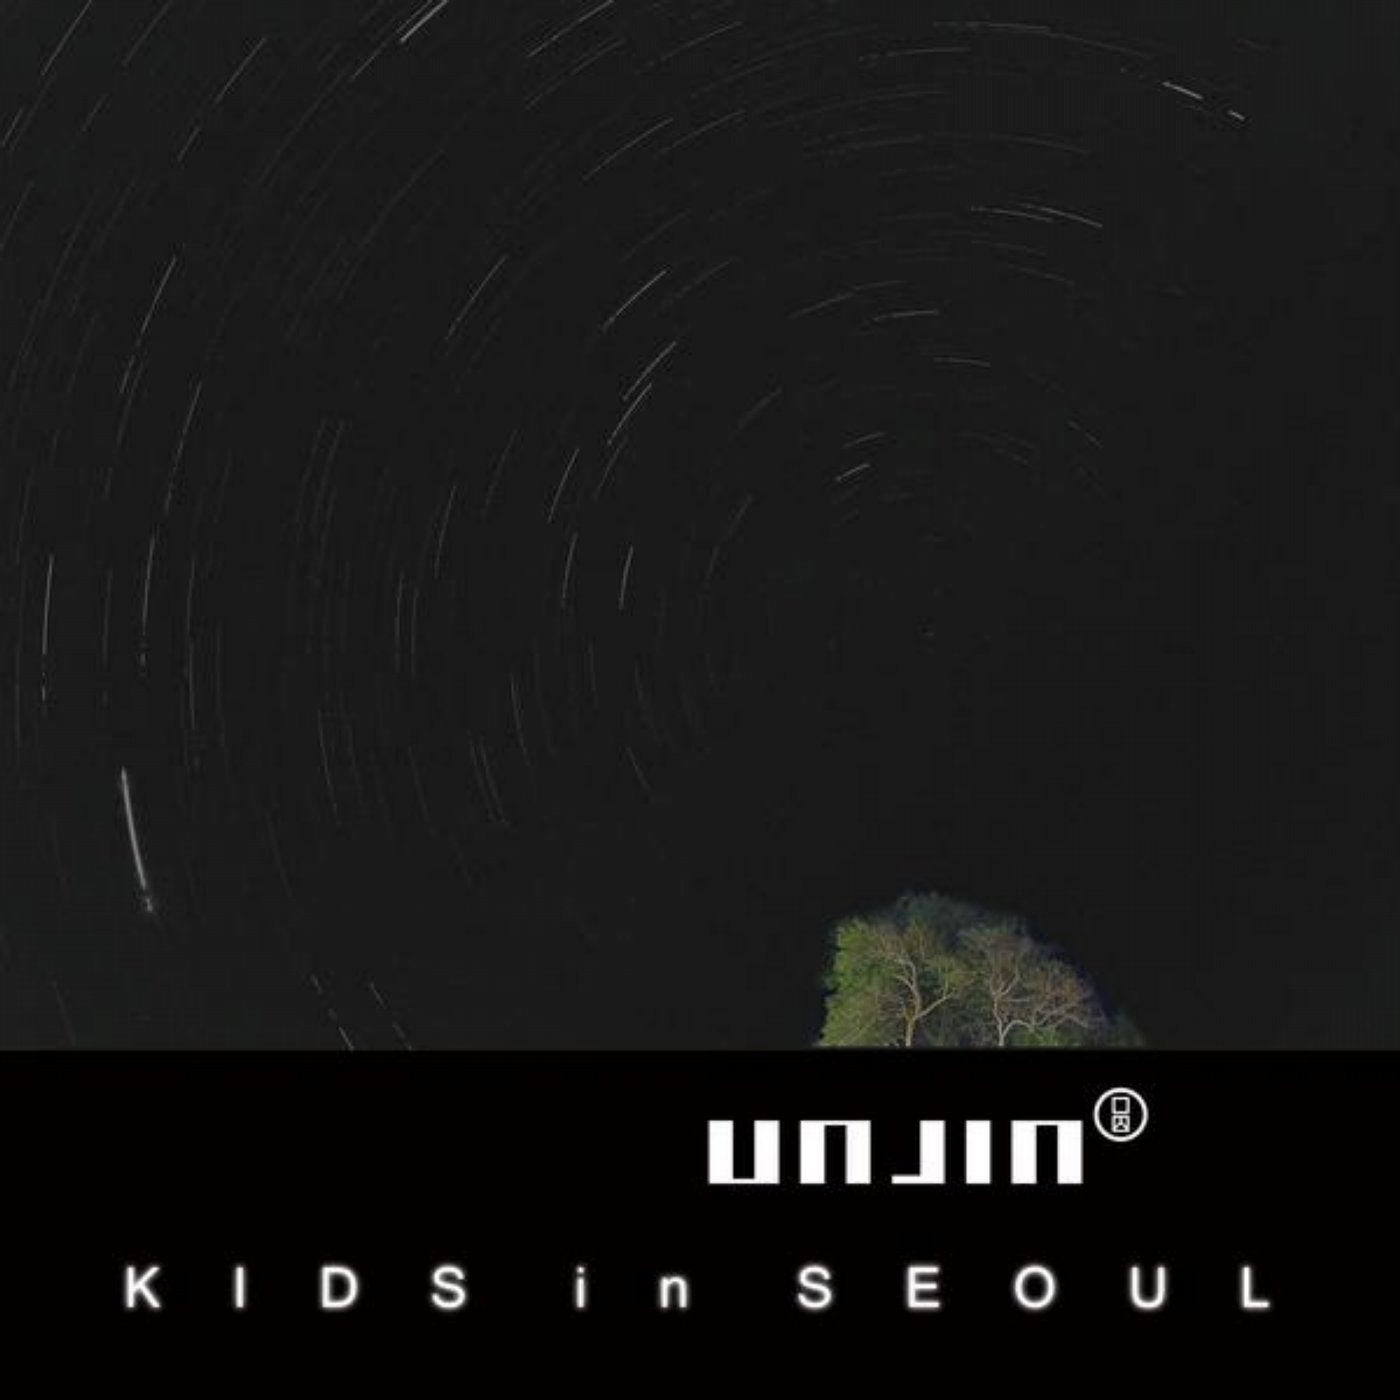 Kids In Seoul